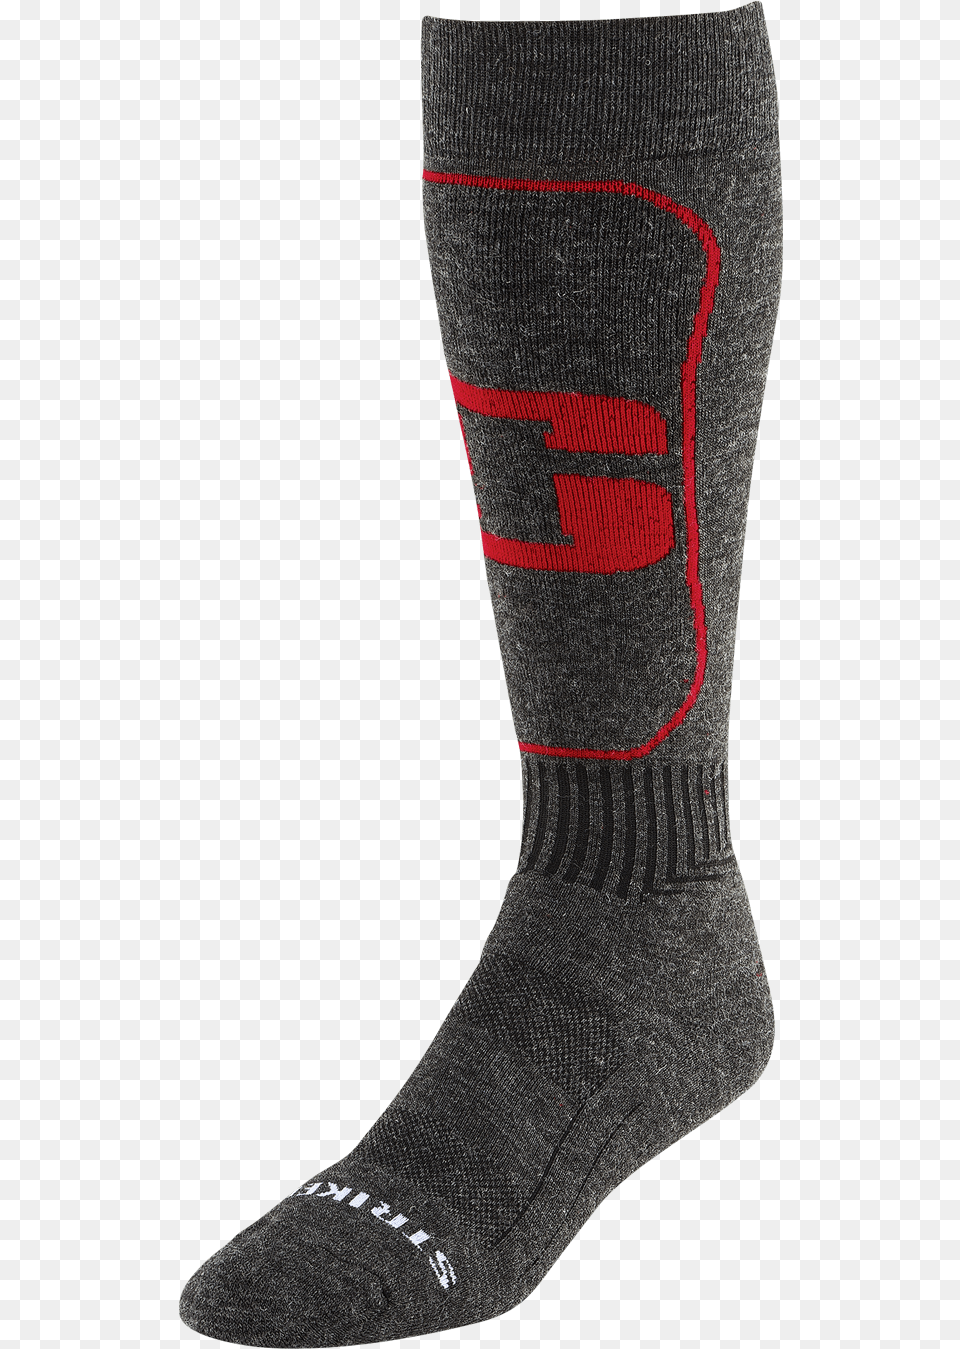 Sock, Clothing, Hosiery Png Image